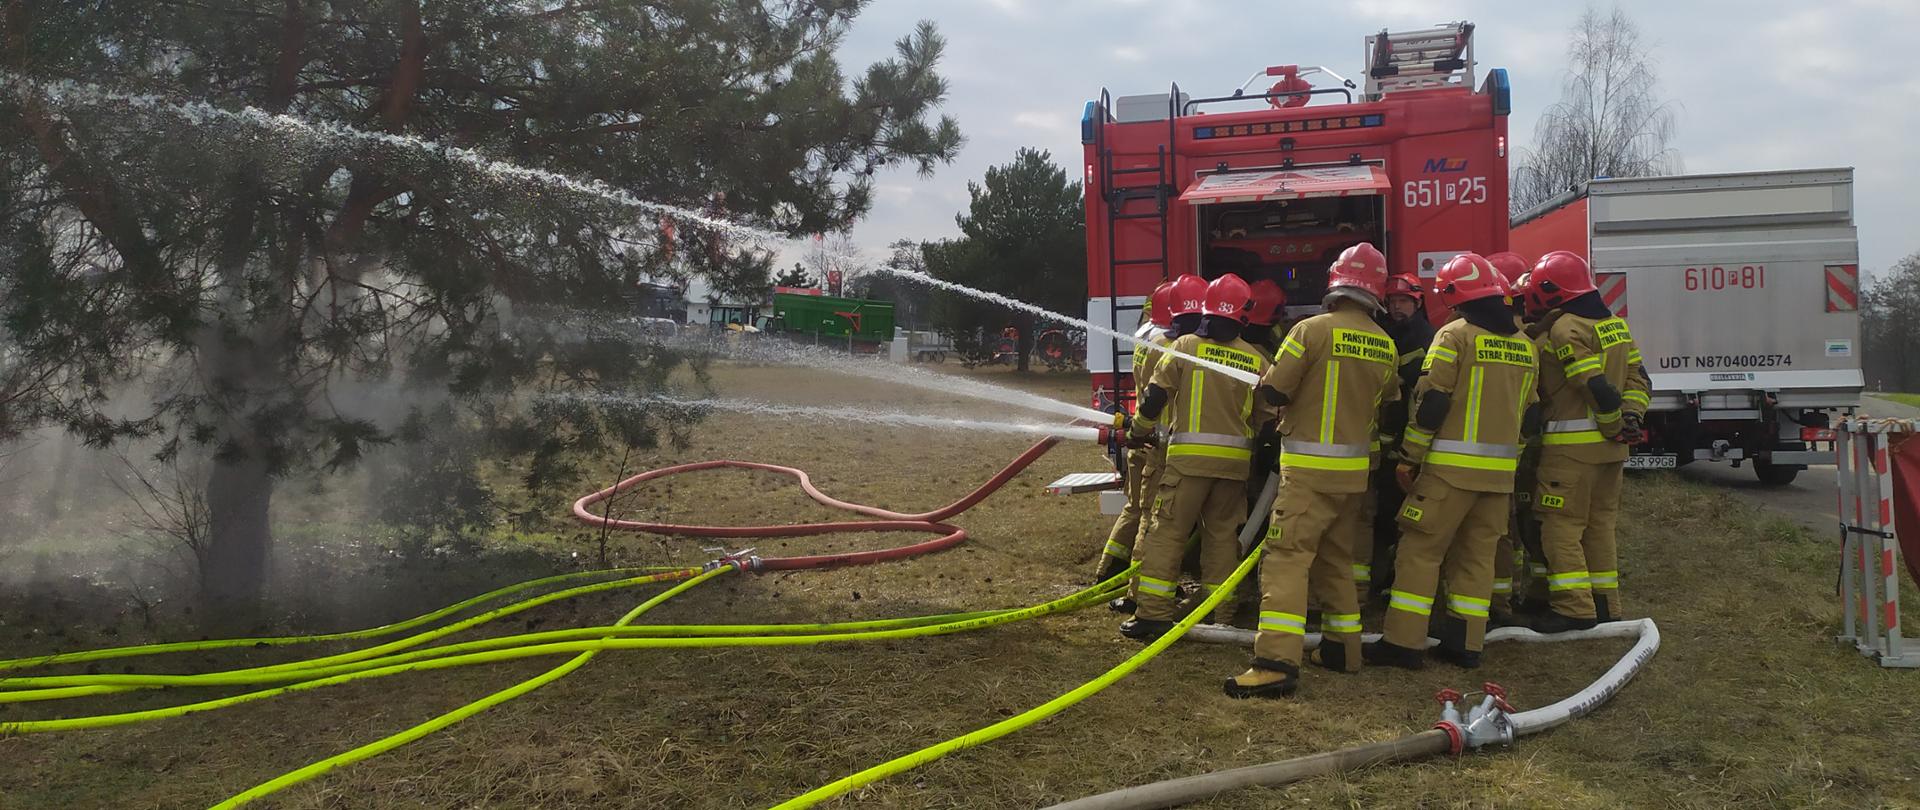 Zdjęcie przedstawia strażaków stojących przy samochodzie strażackim podczas ćwiczeń. Strażacy podają wodę przez prądownice. Na zdjęciu widać kilka linii wężowych. 